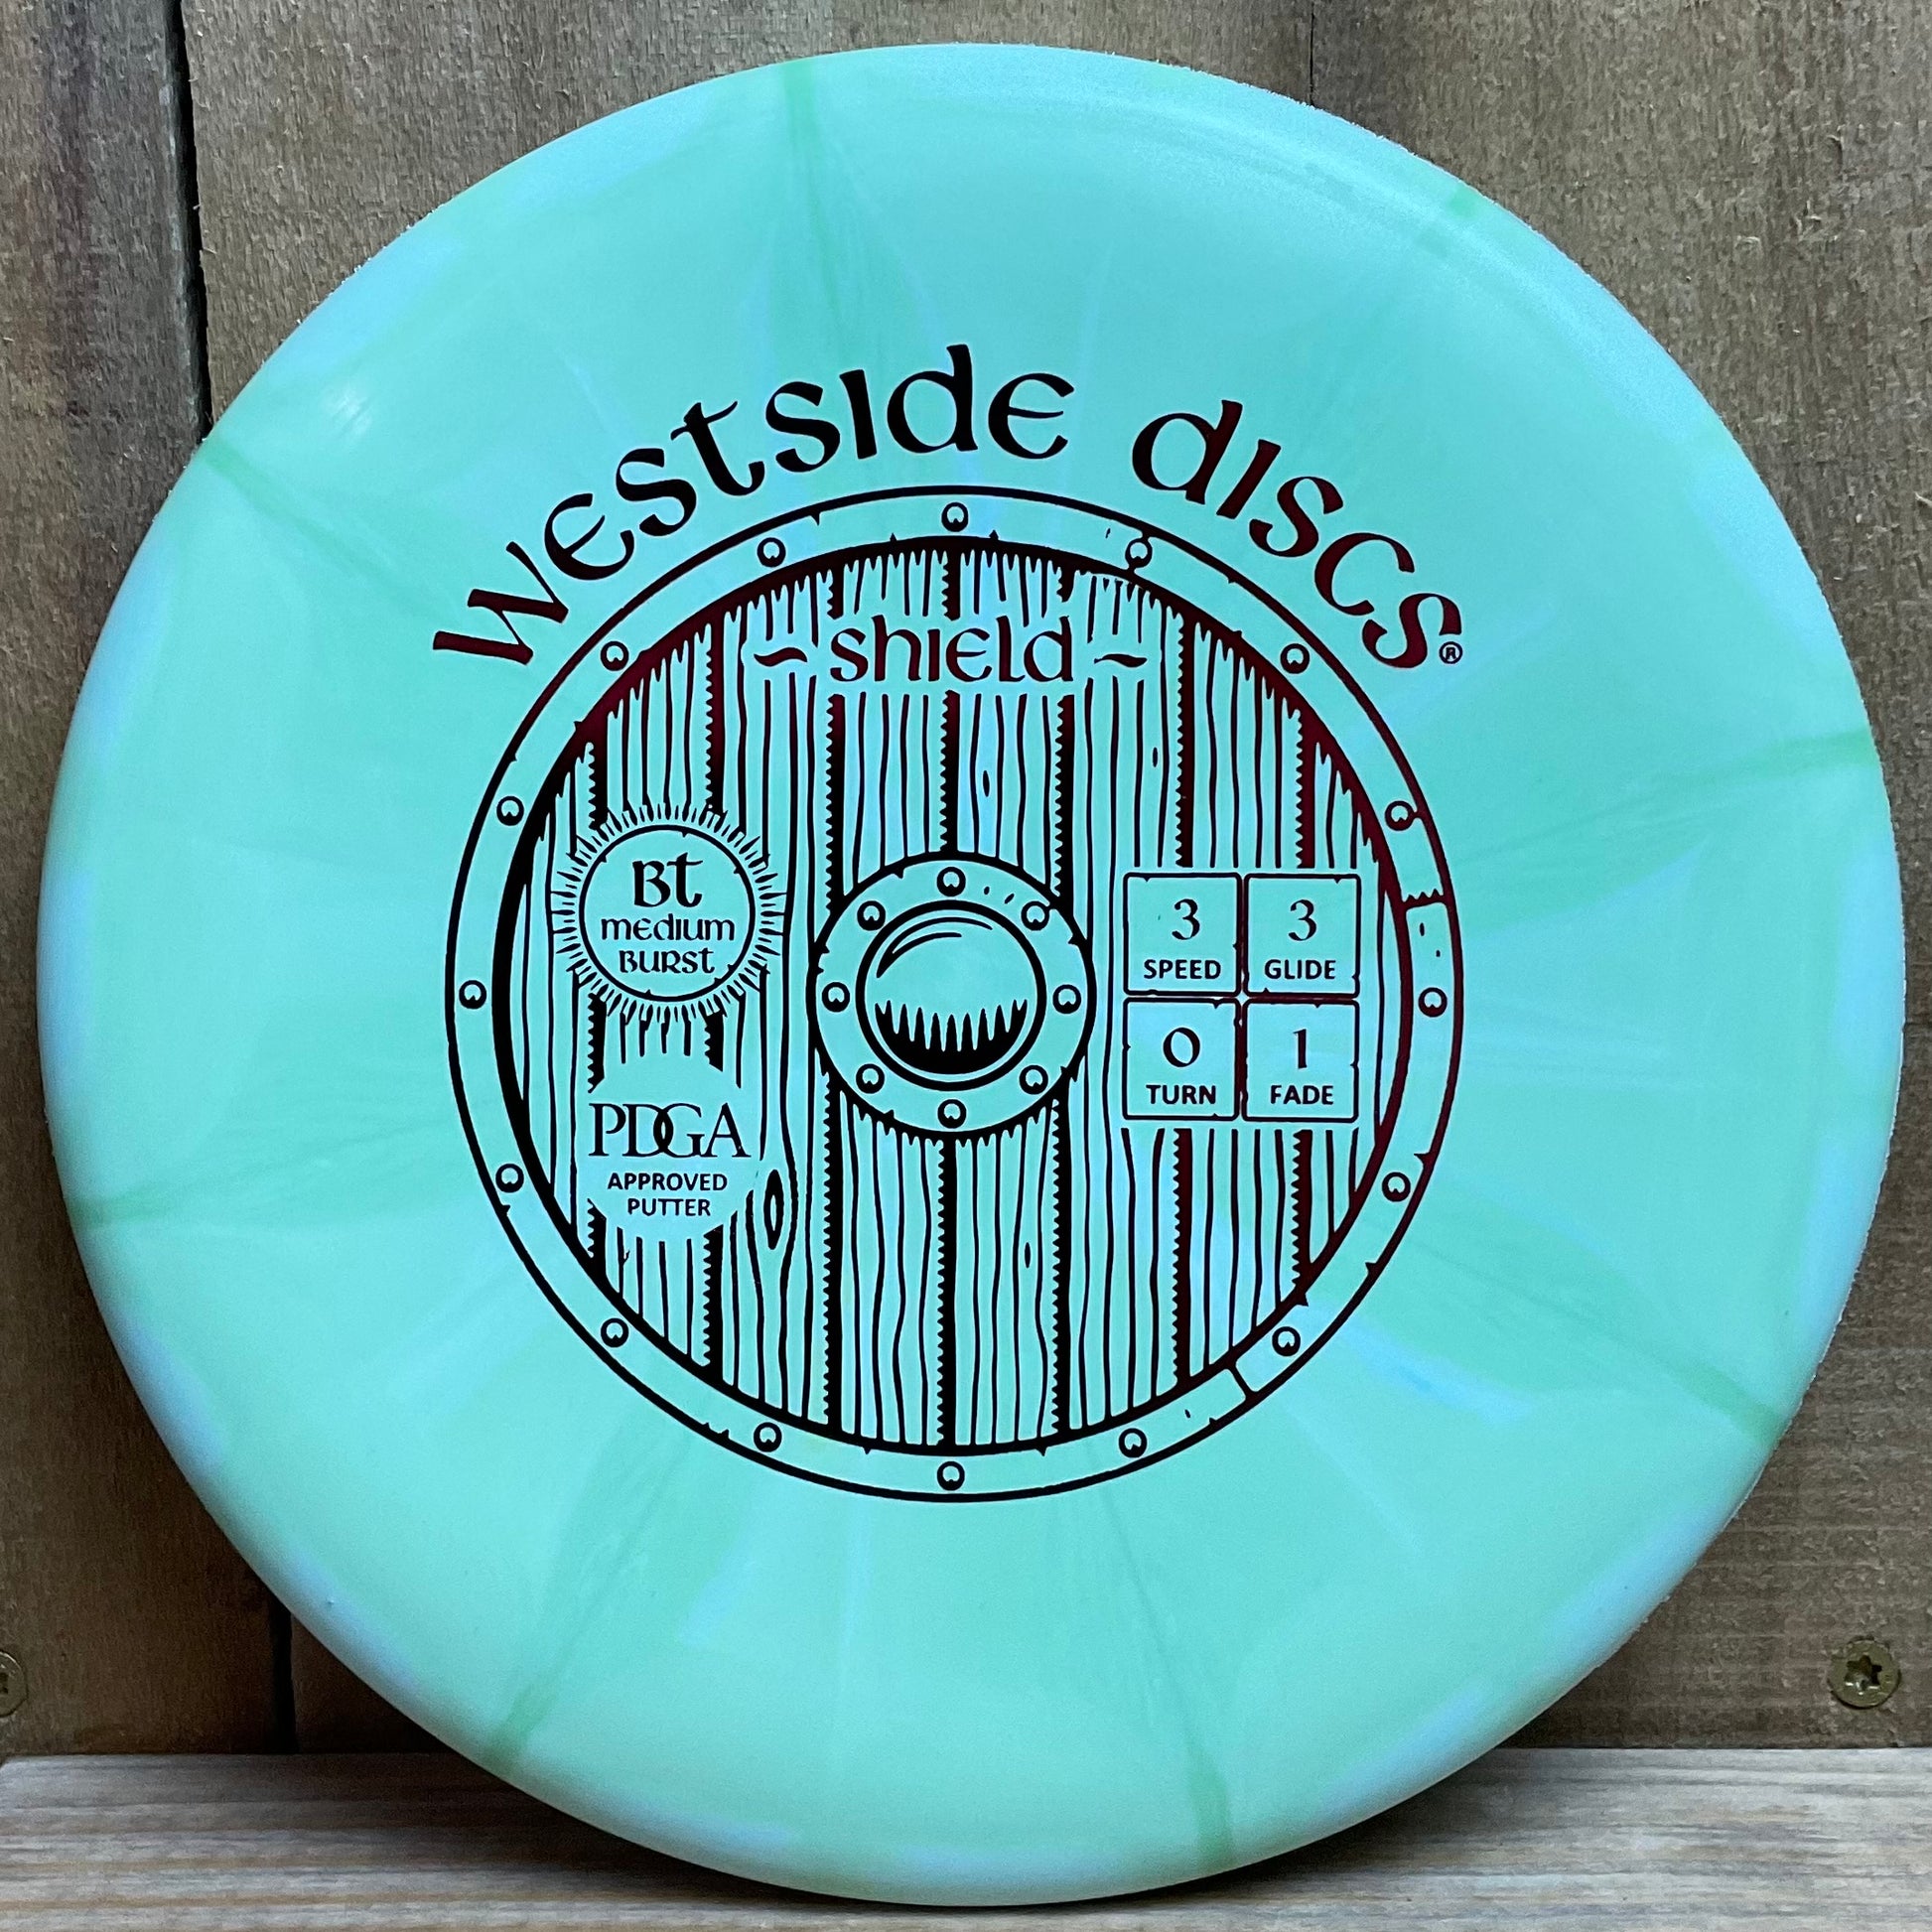 Westside BT Medium Shield